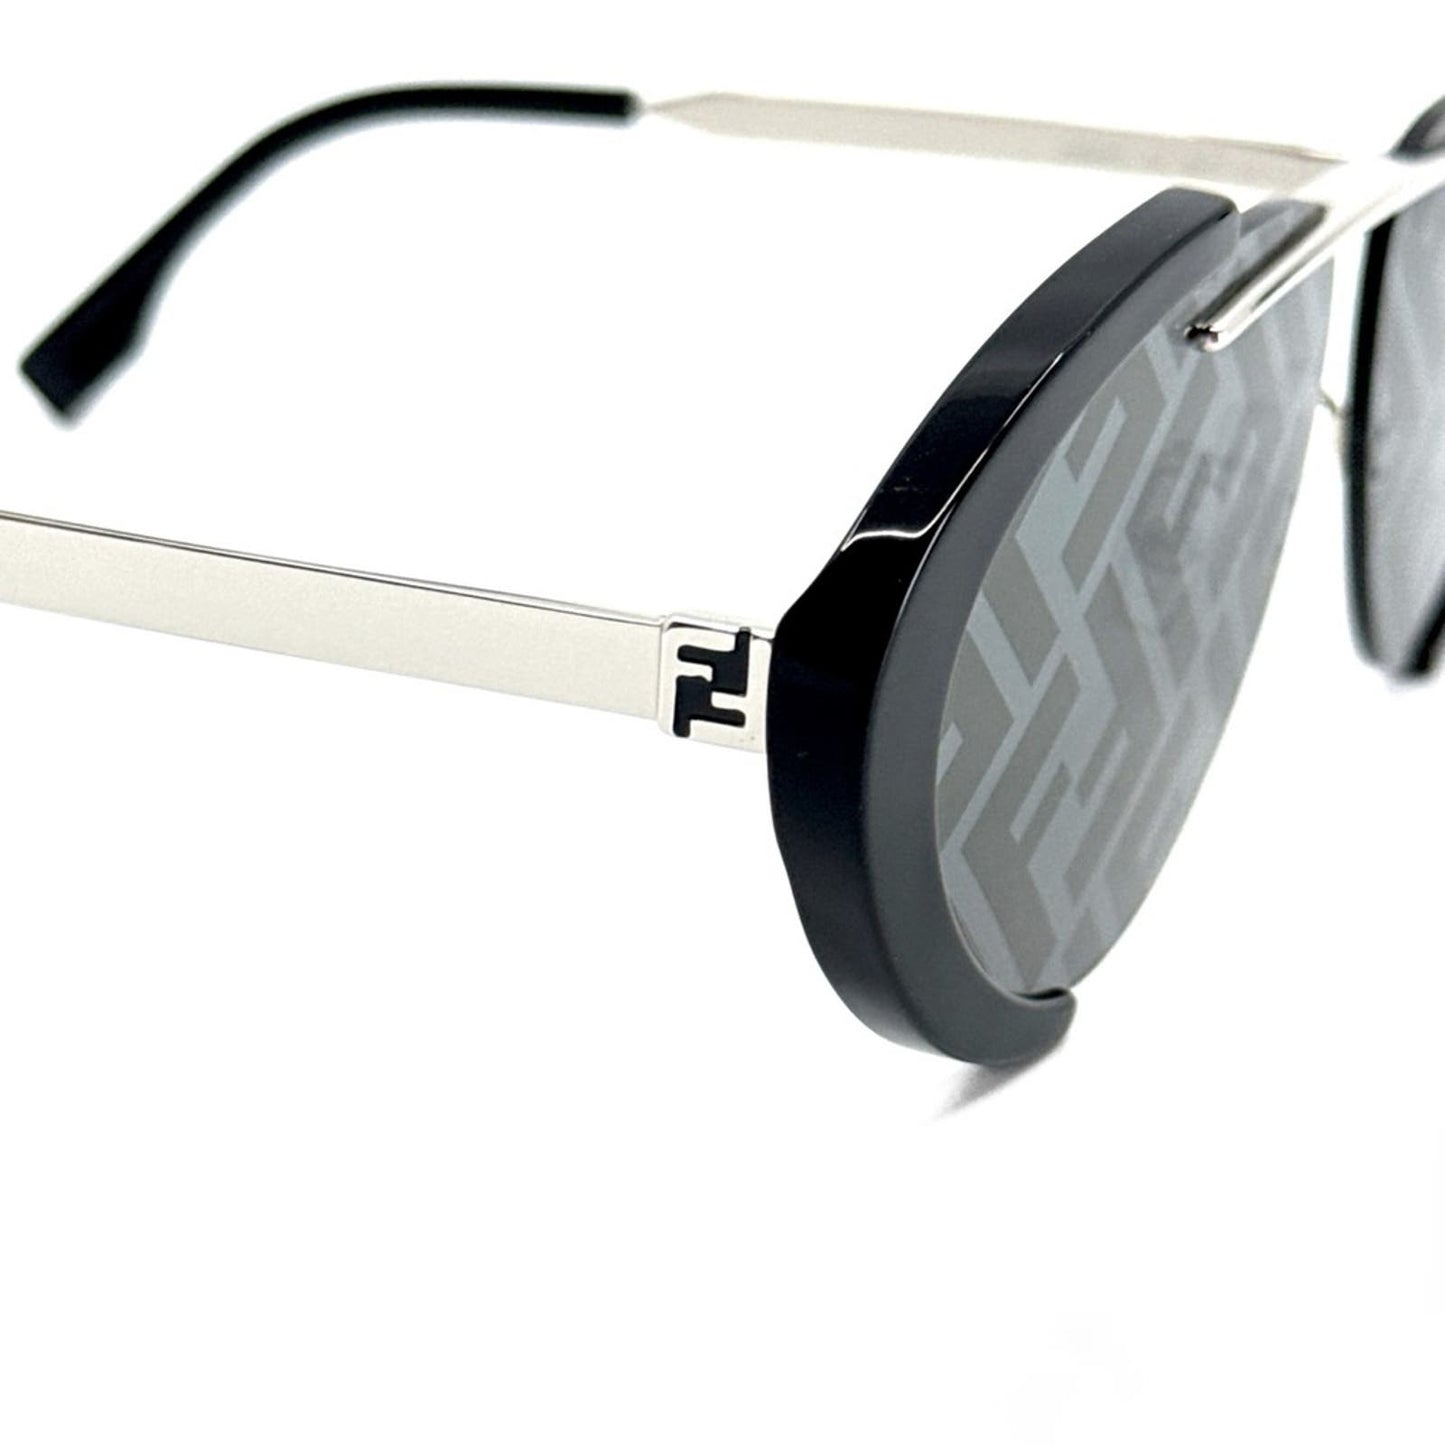 FENDI Sunglasses FE40042U 01C